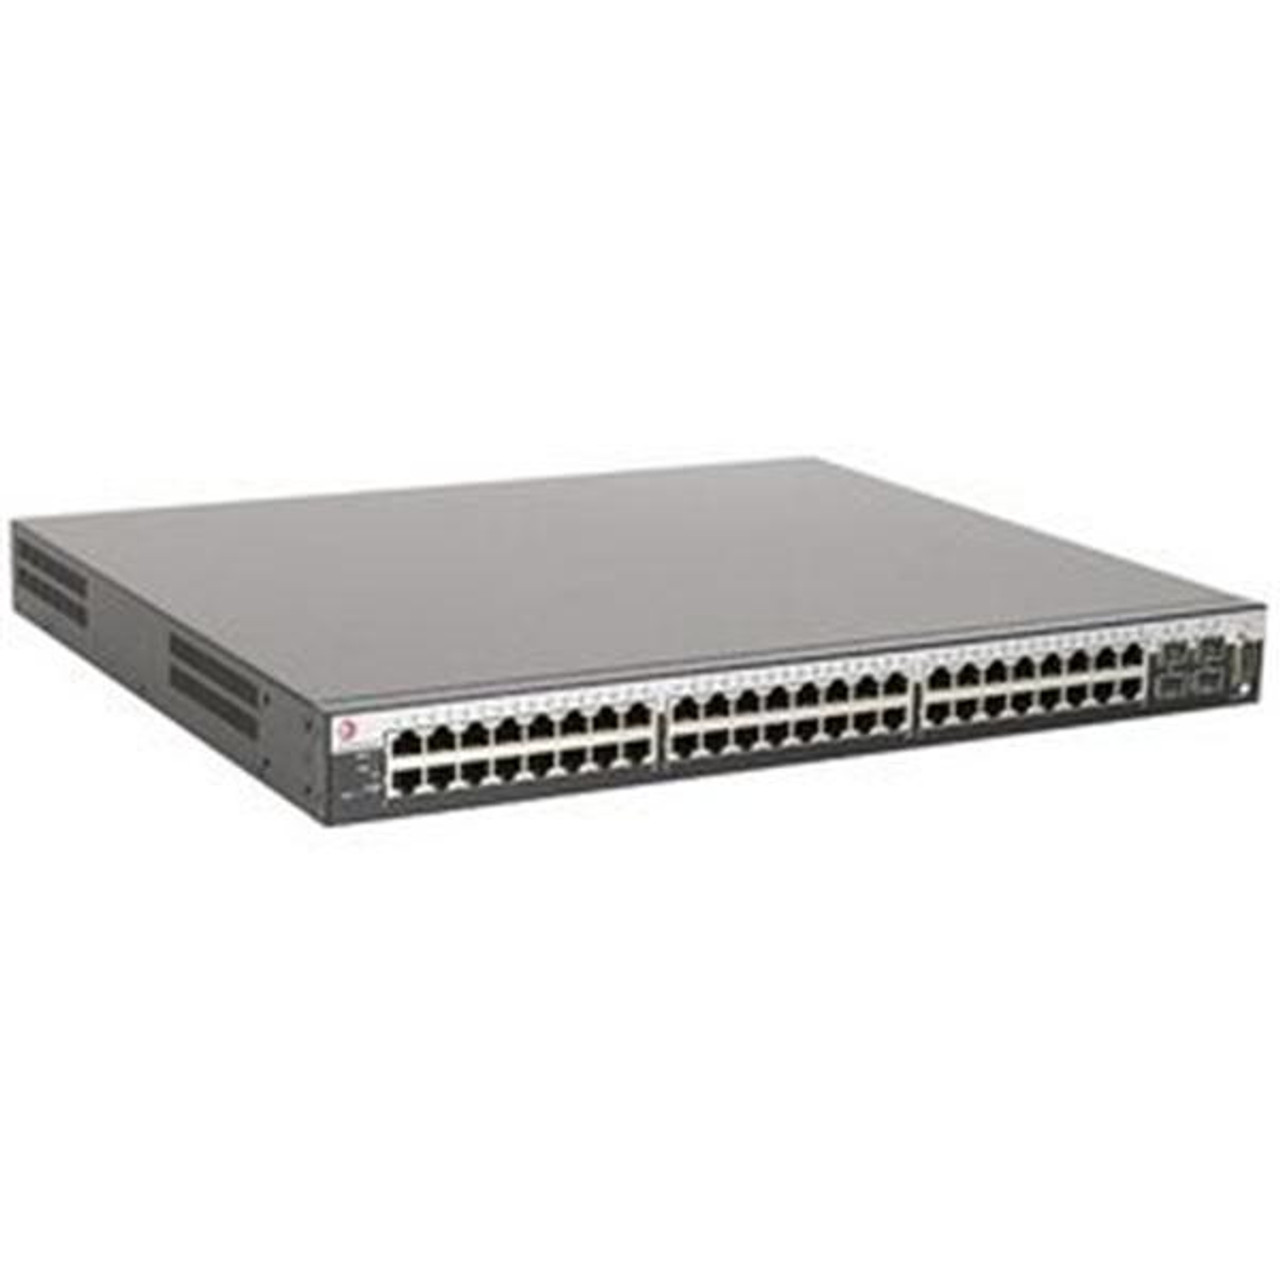 C3G124-48 Enterasys Networks SecureStack Switch 48-Ports EN Fast EN Gigabit EN 10Base-T 100Base-TX 1000Base-T + 4x Shared SFP (empty) 1U Stackable